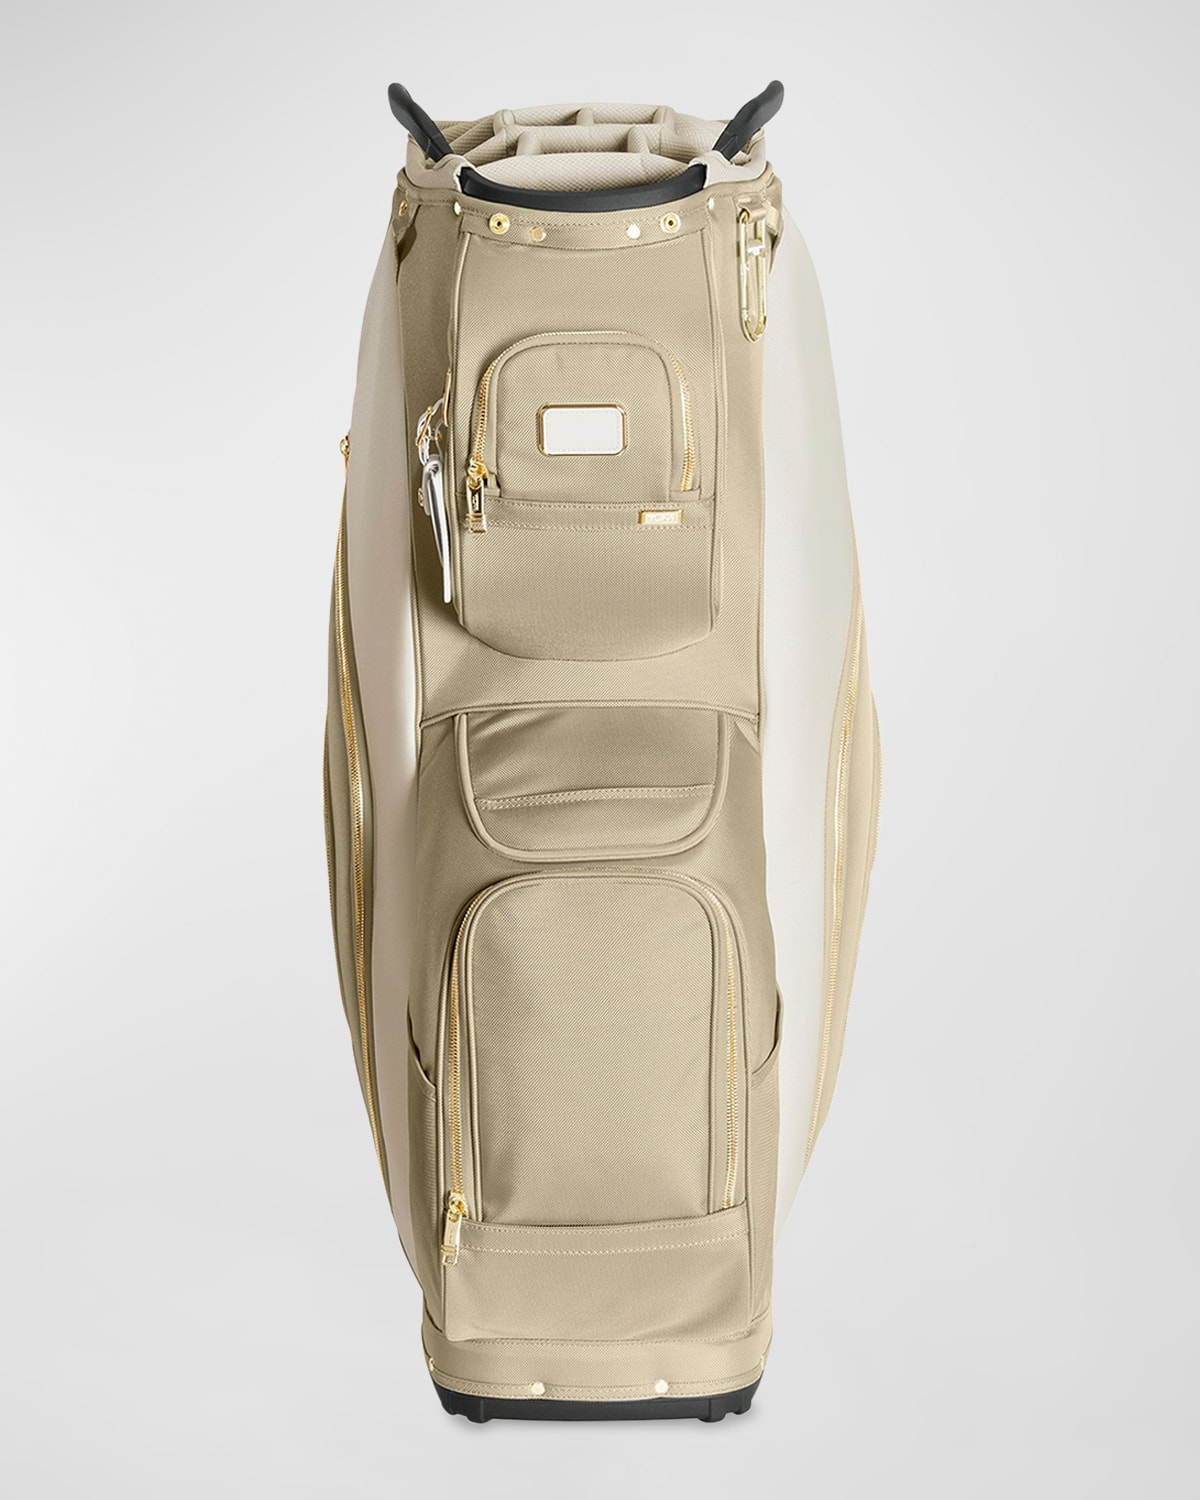 Tumi Golf Cart Bag In Neutral